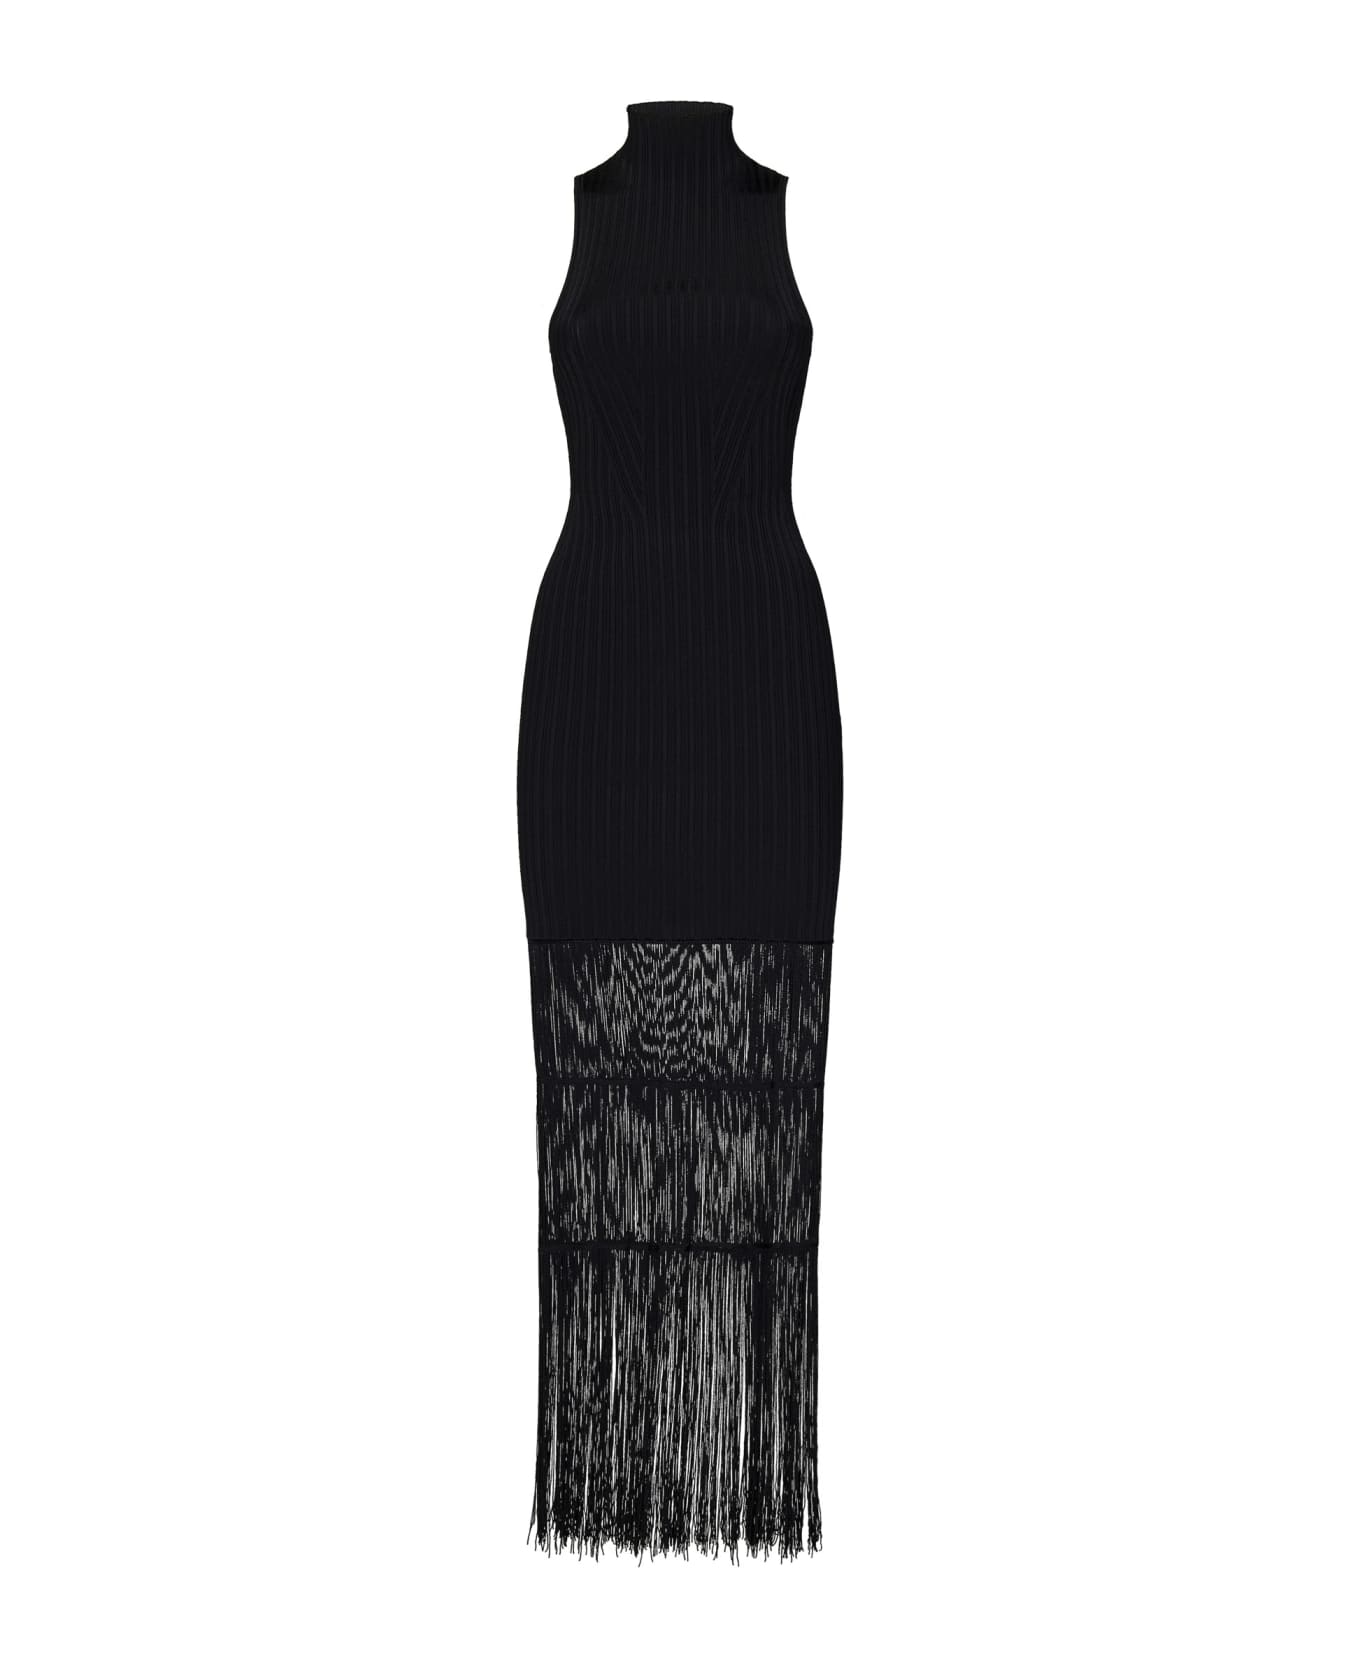 Khaite Ny Zare Dress - Black